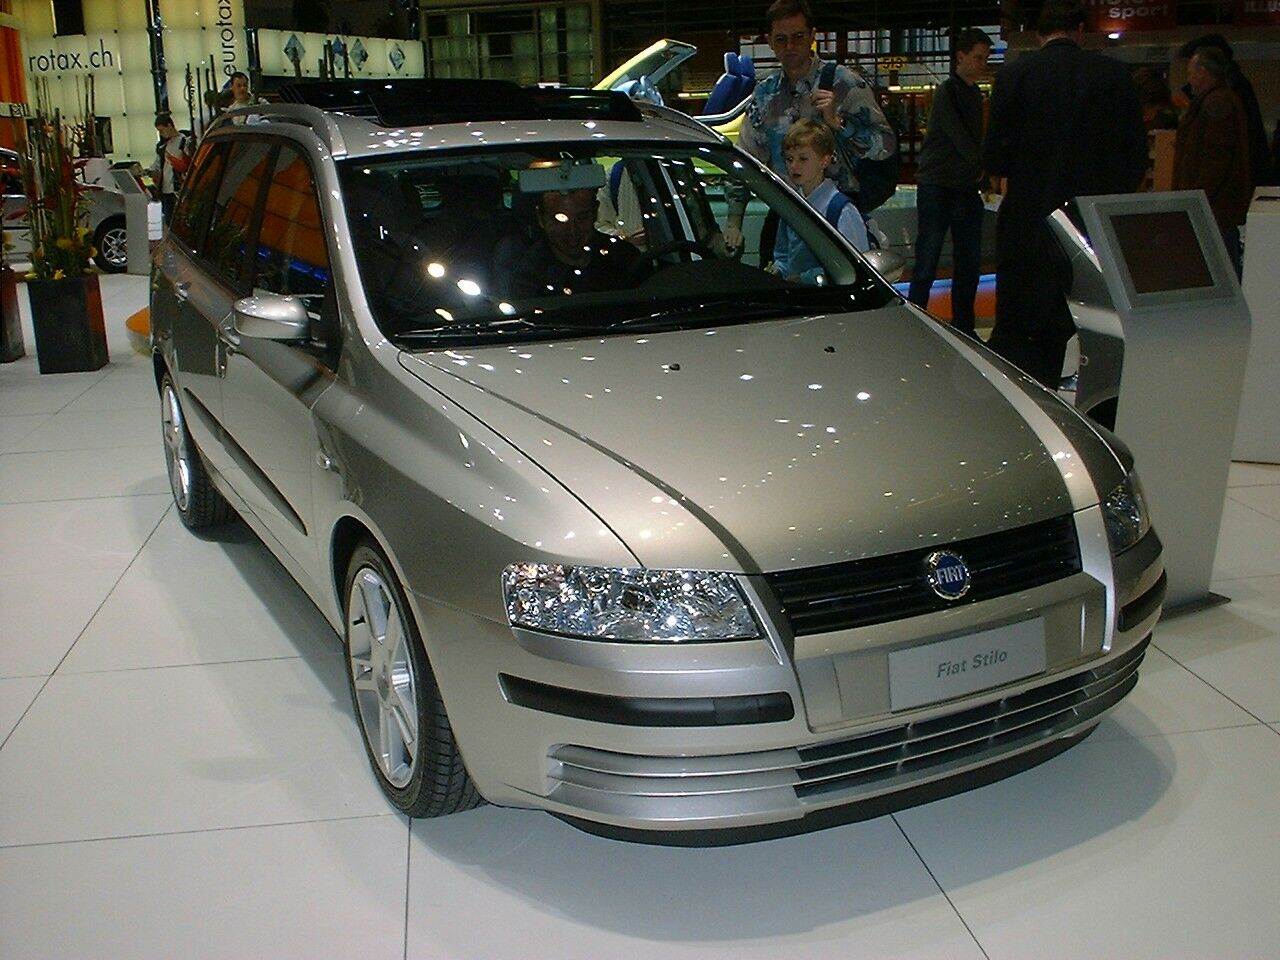 Fiat Multiwagon 1.9 JTD at the 2003 Geneva Motor Show